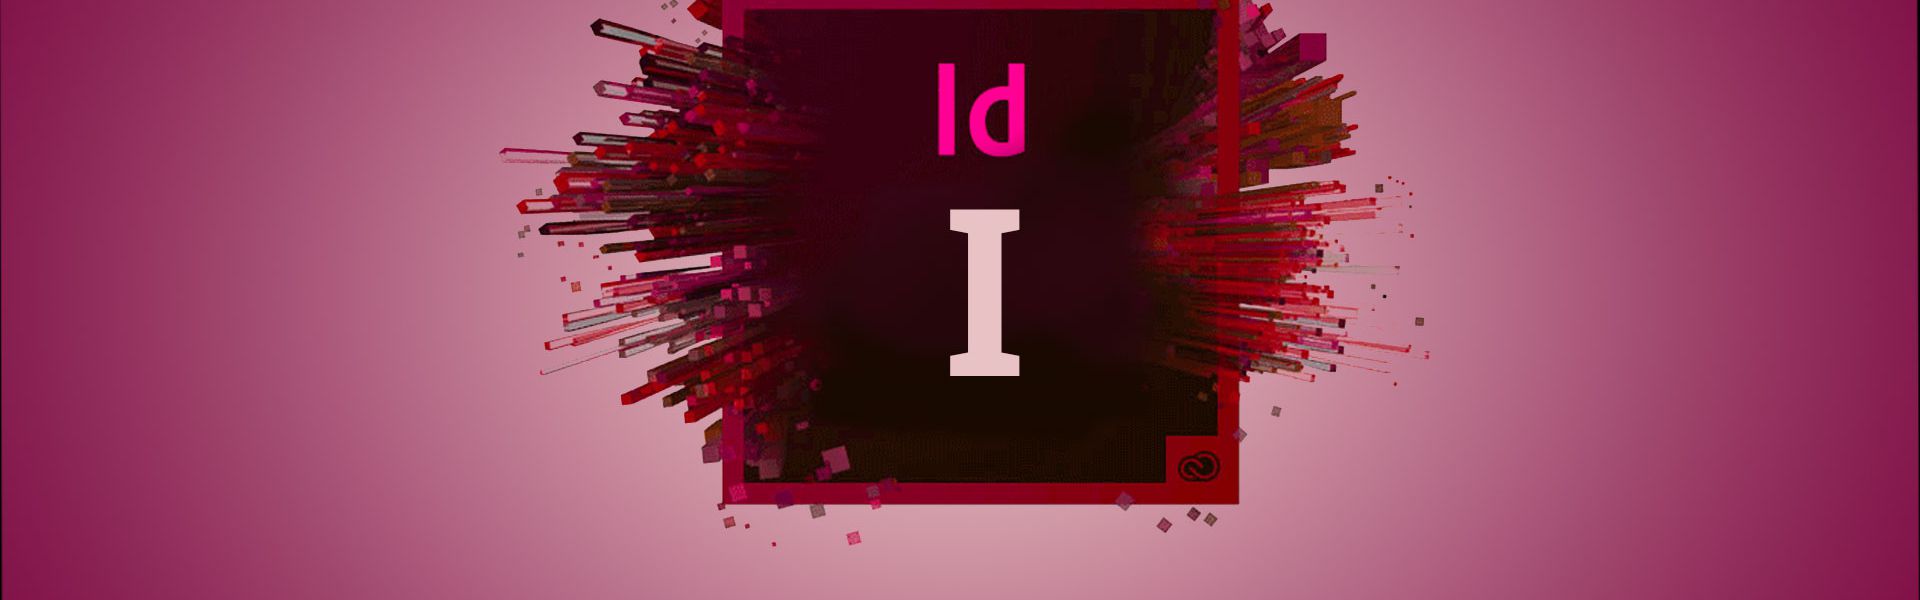 Adobe InDesign - De Basis - I